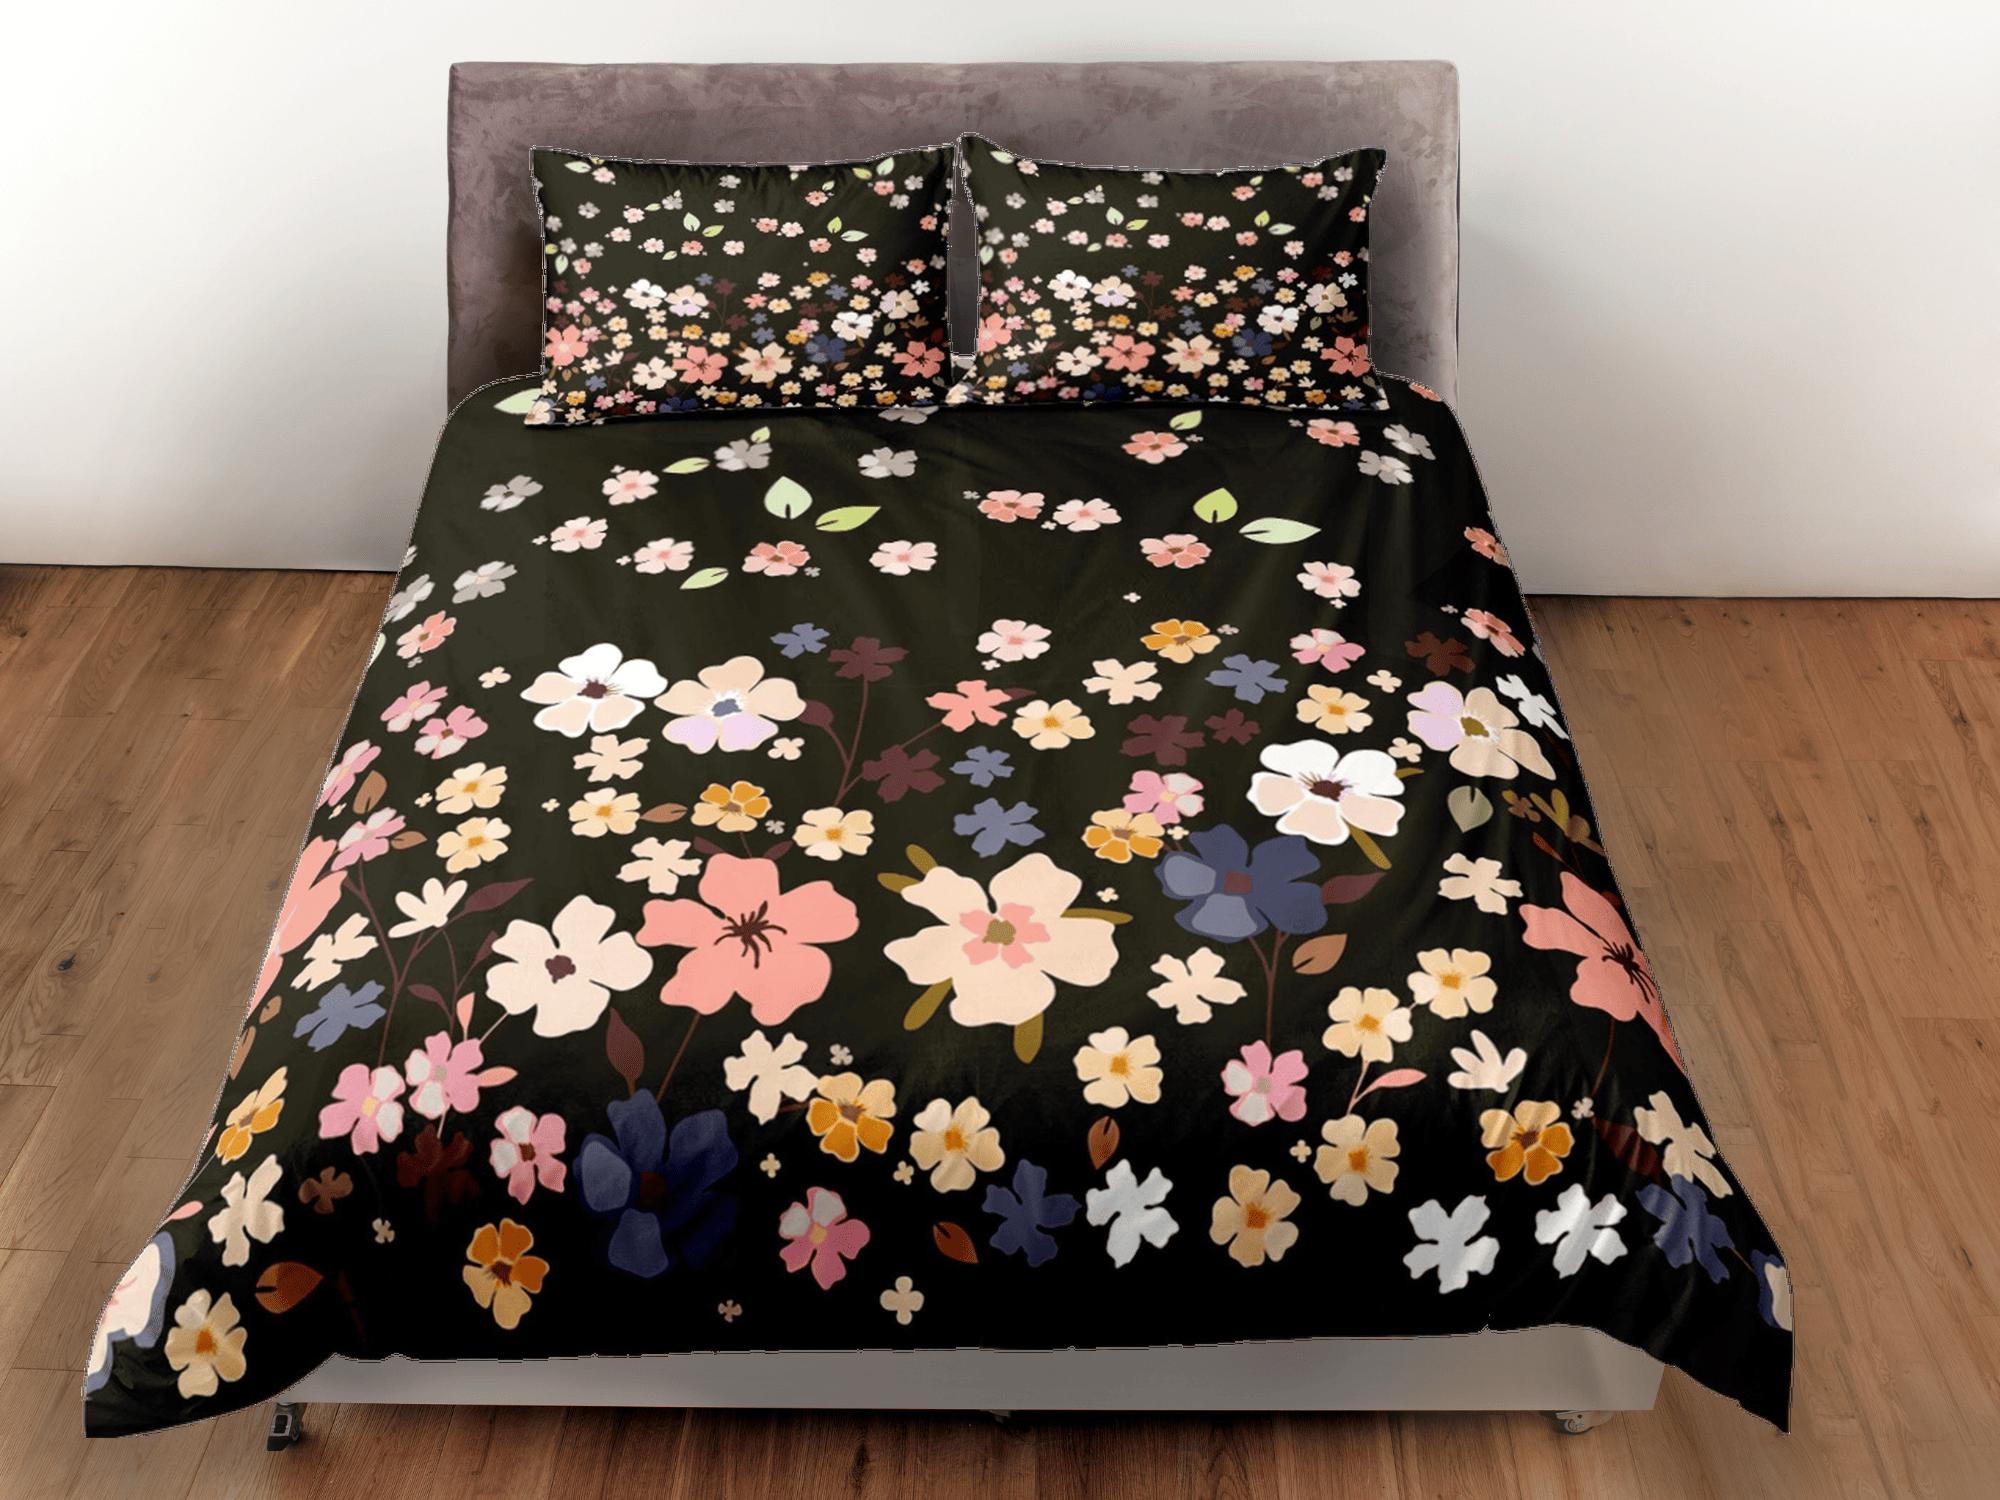 daintyduvet Dainty floral bedding, black bohemian duvet cover queen, king, boho duvet, designer bedding, aesthetic bedding, maximalist full size bedding